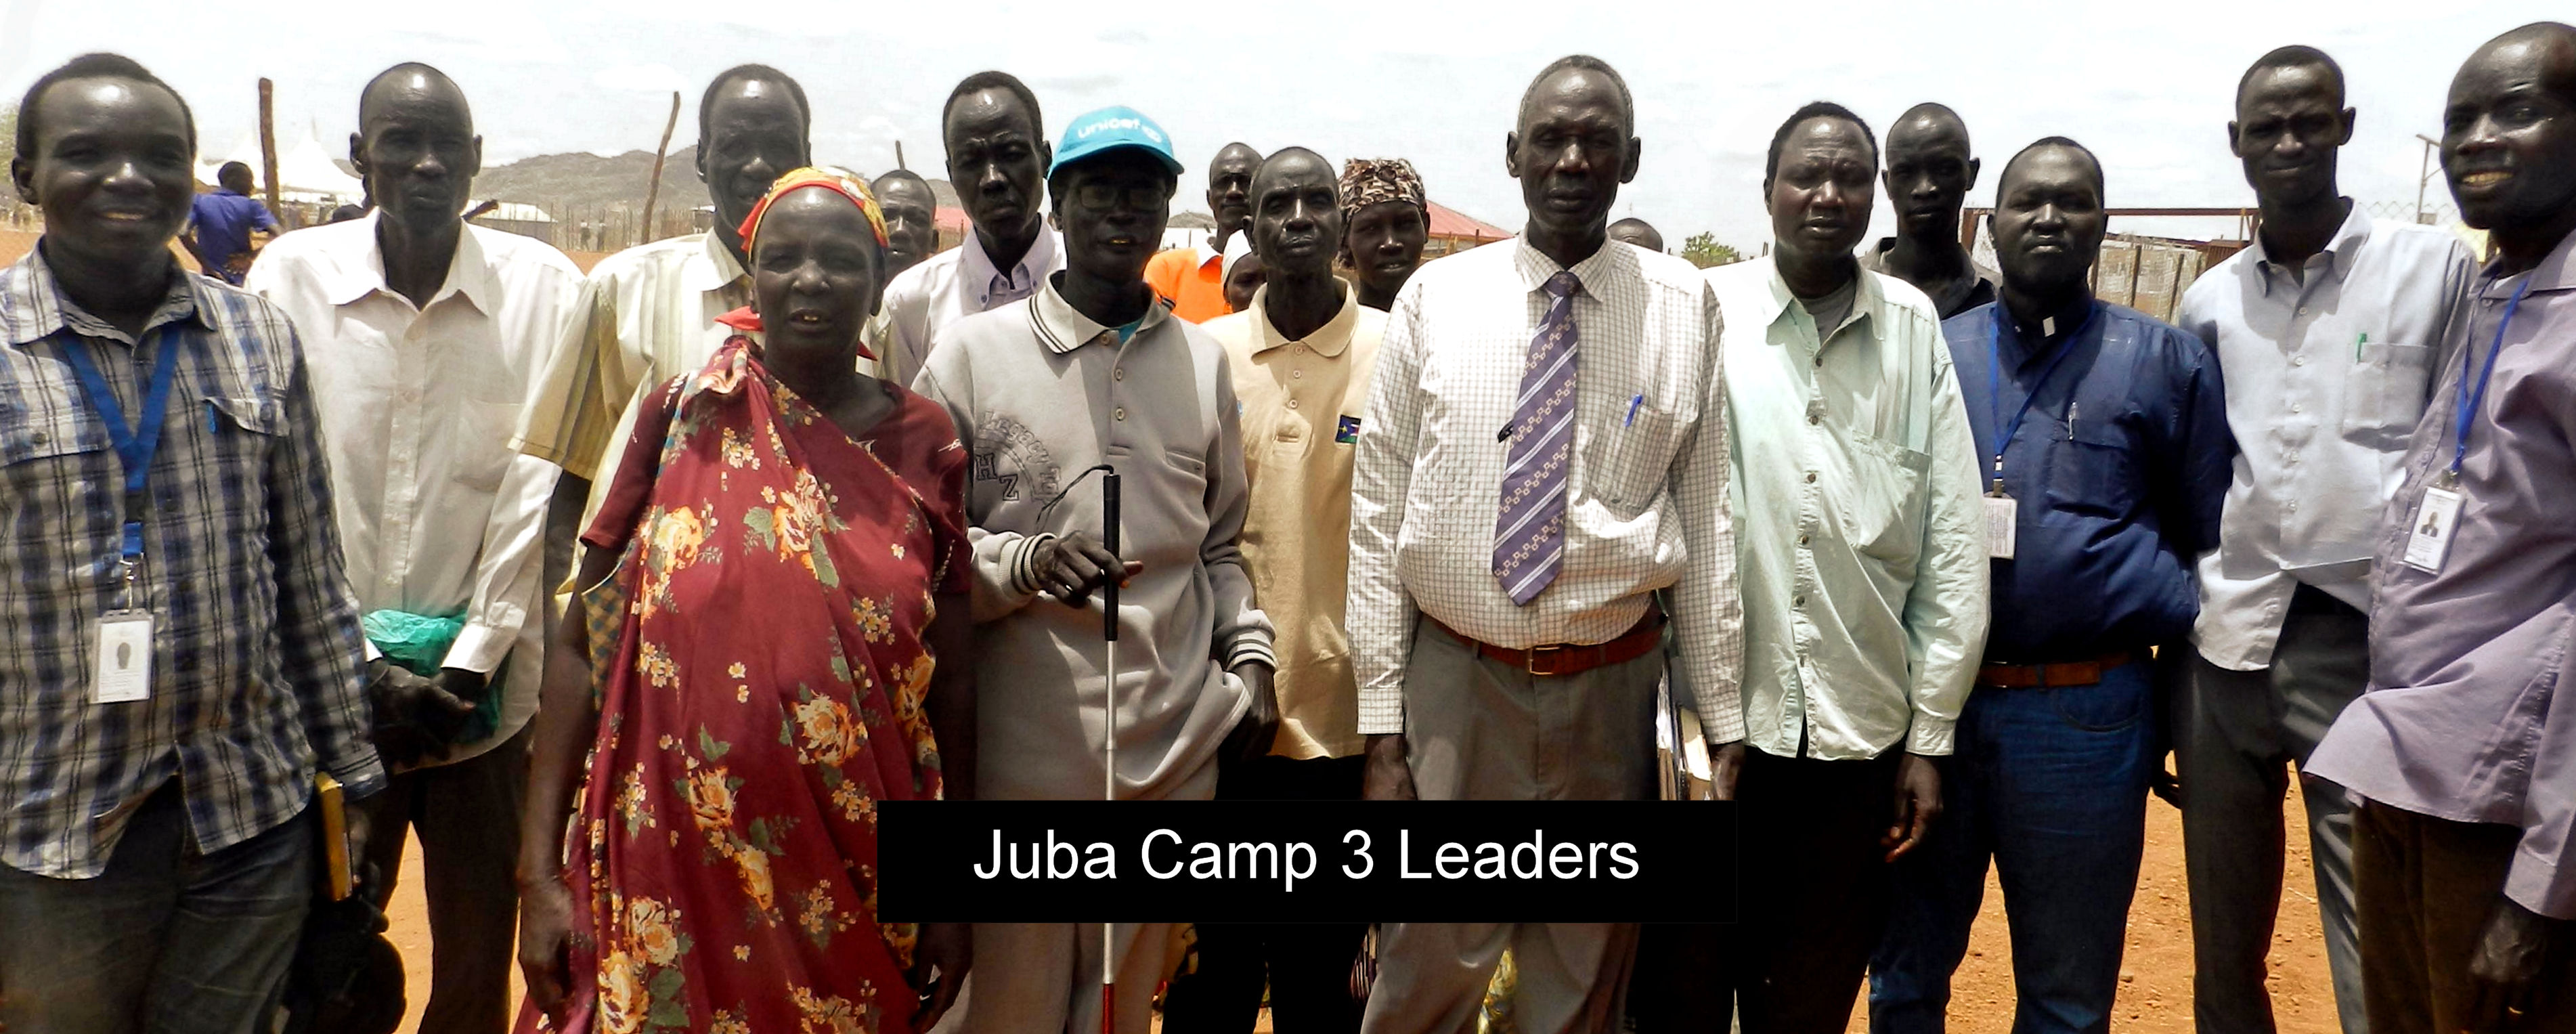 Juba Camp 3 Leaders